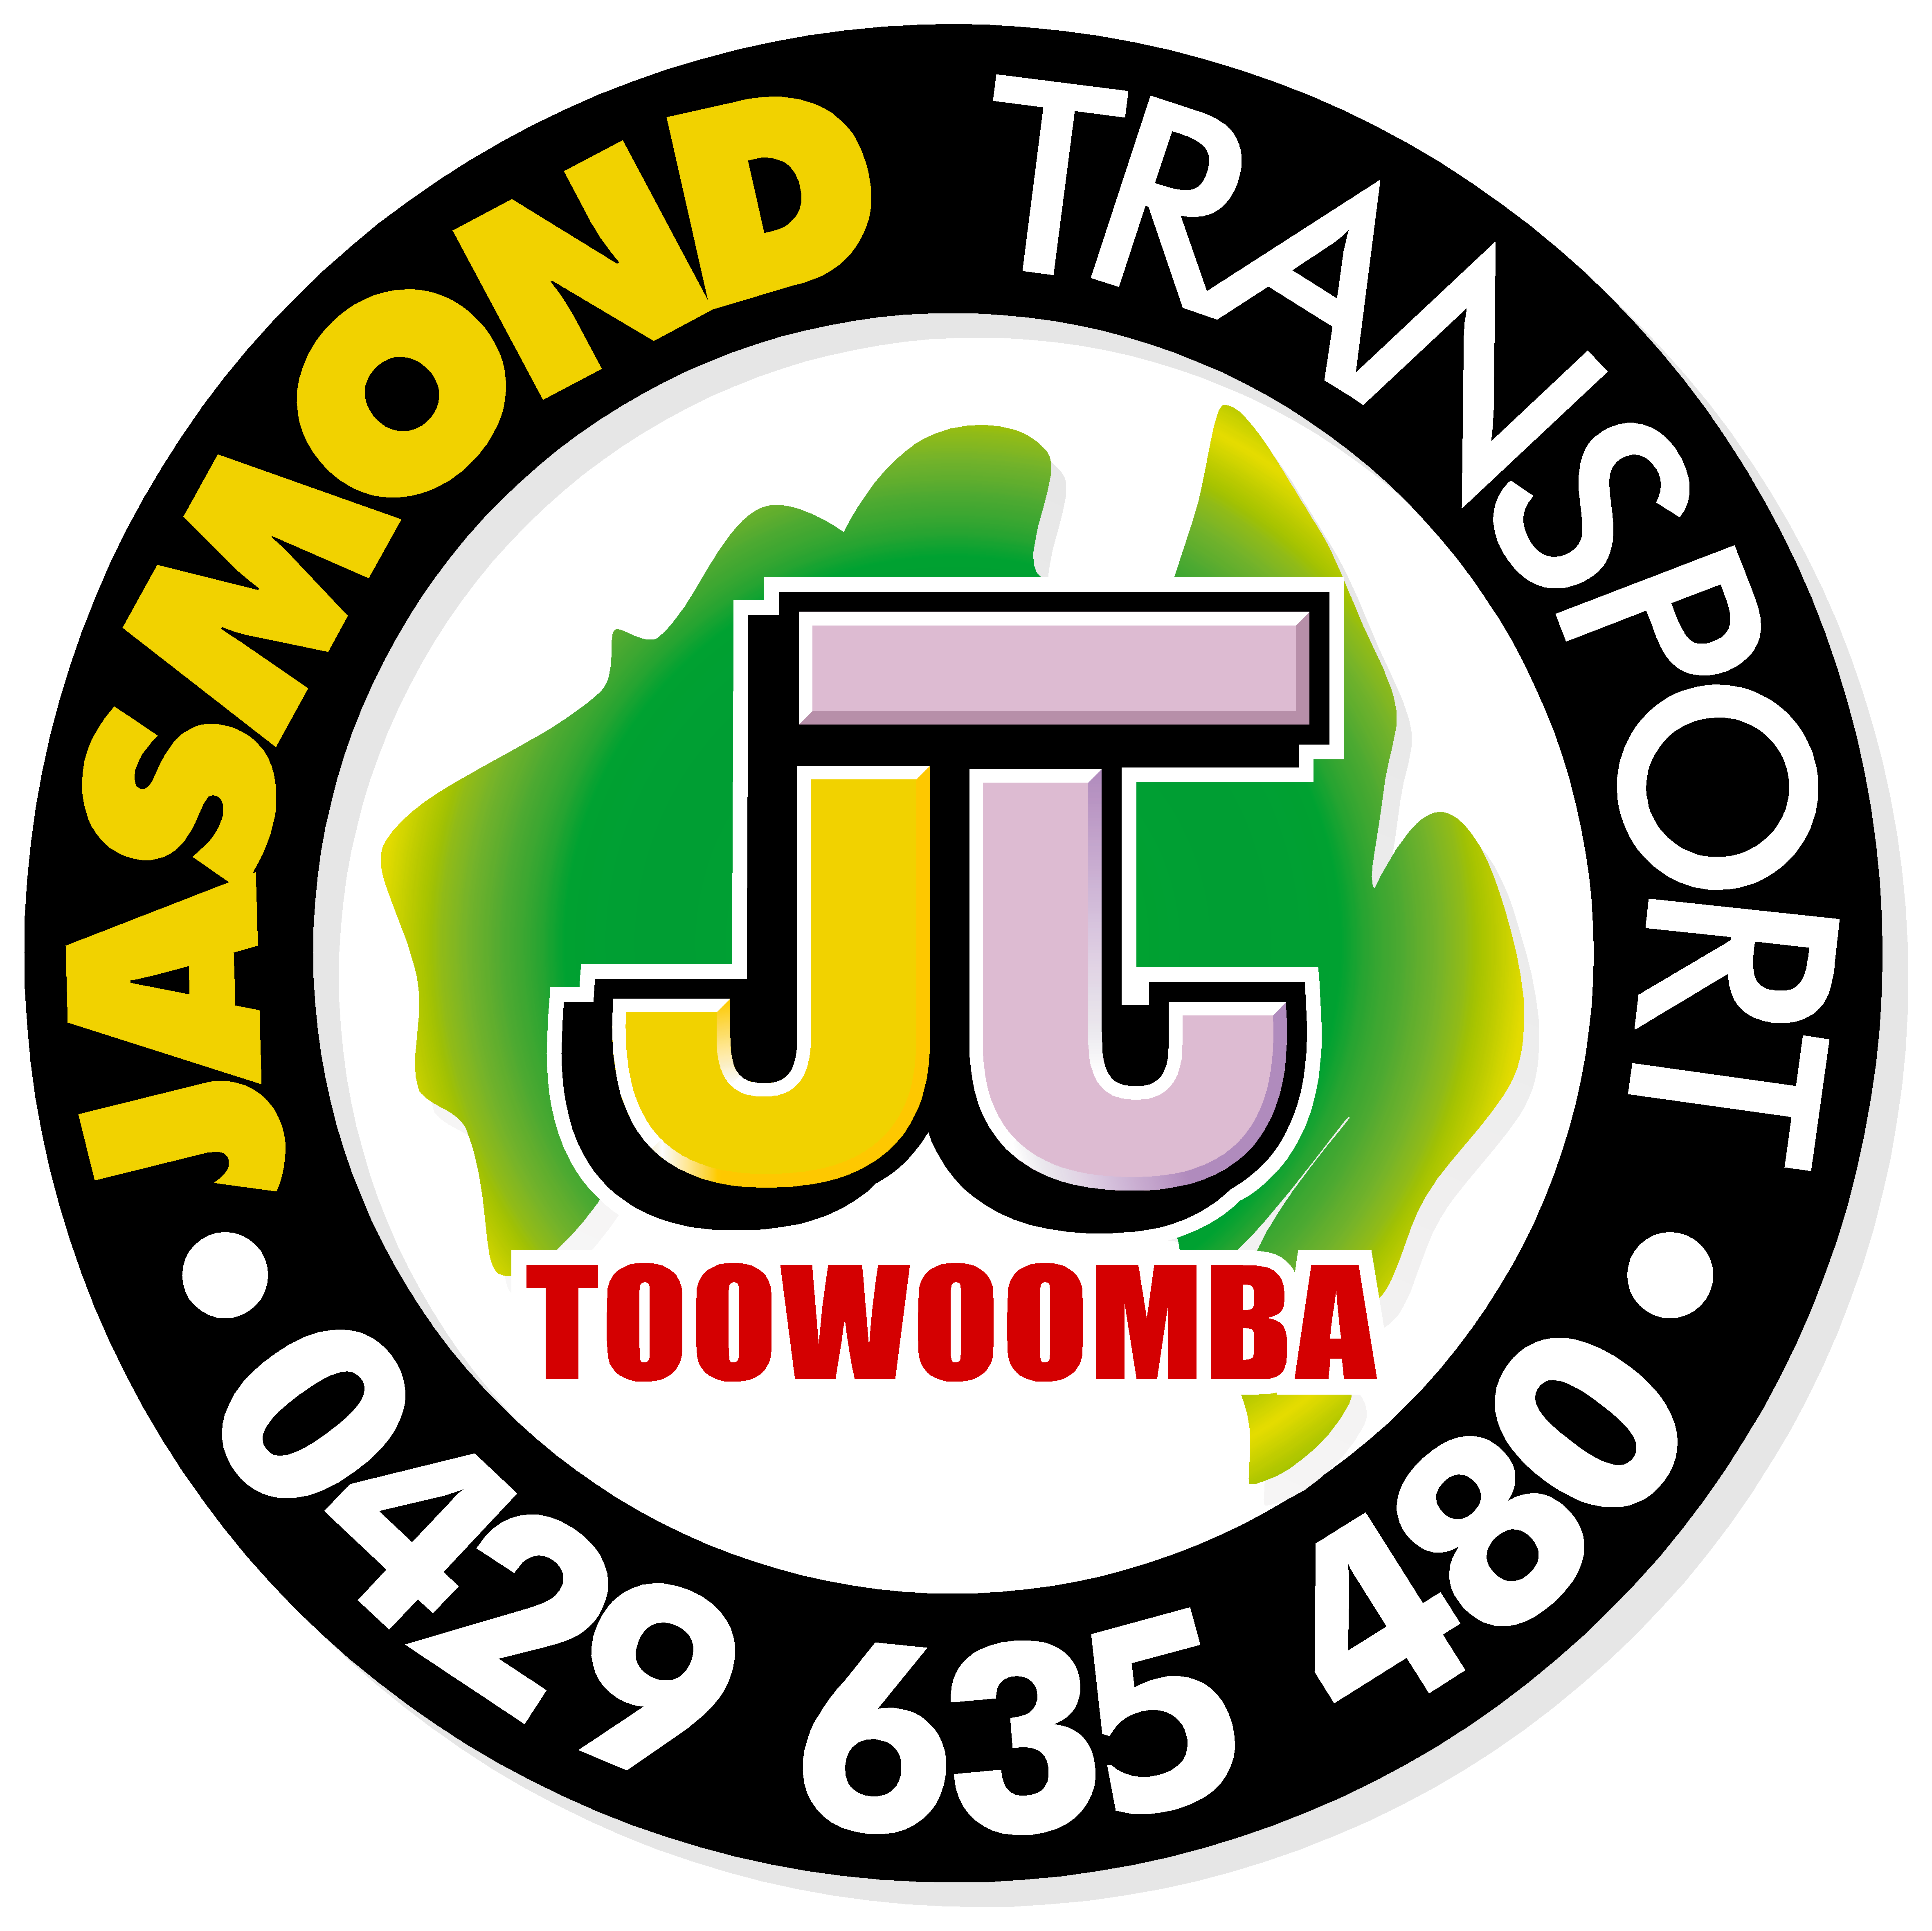 Images Jasmond Transport